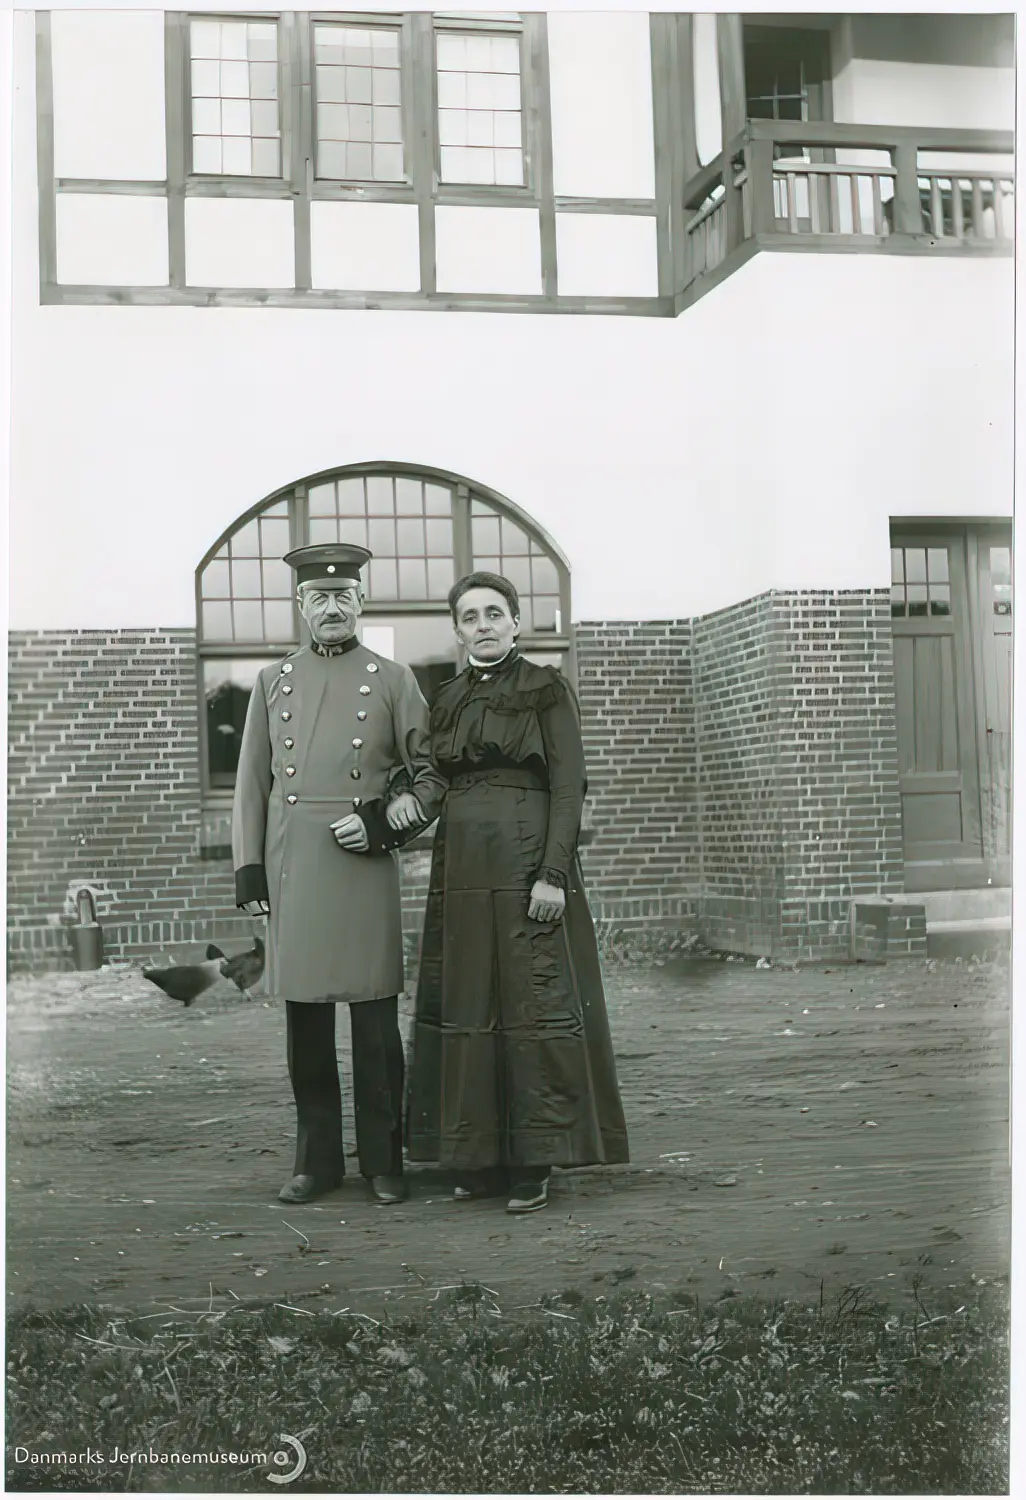 Den tyske stationsforstander (navn uidentificeret) med hustru umiddelbart før uniformsskiftet ved overgangen til dansk tjeneste efter Genforeningen.